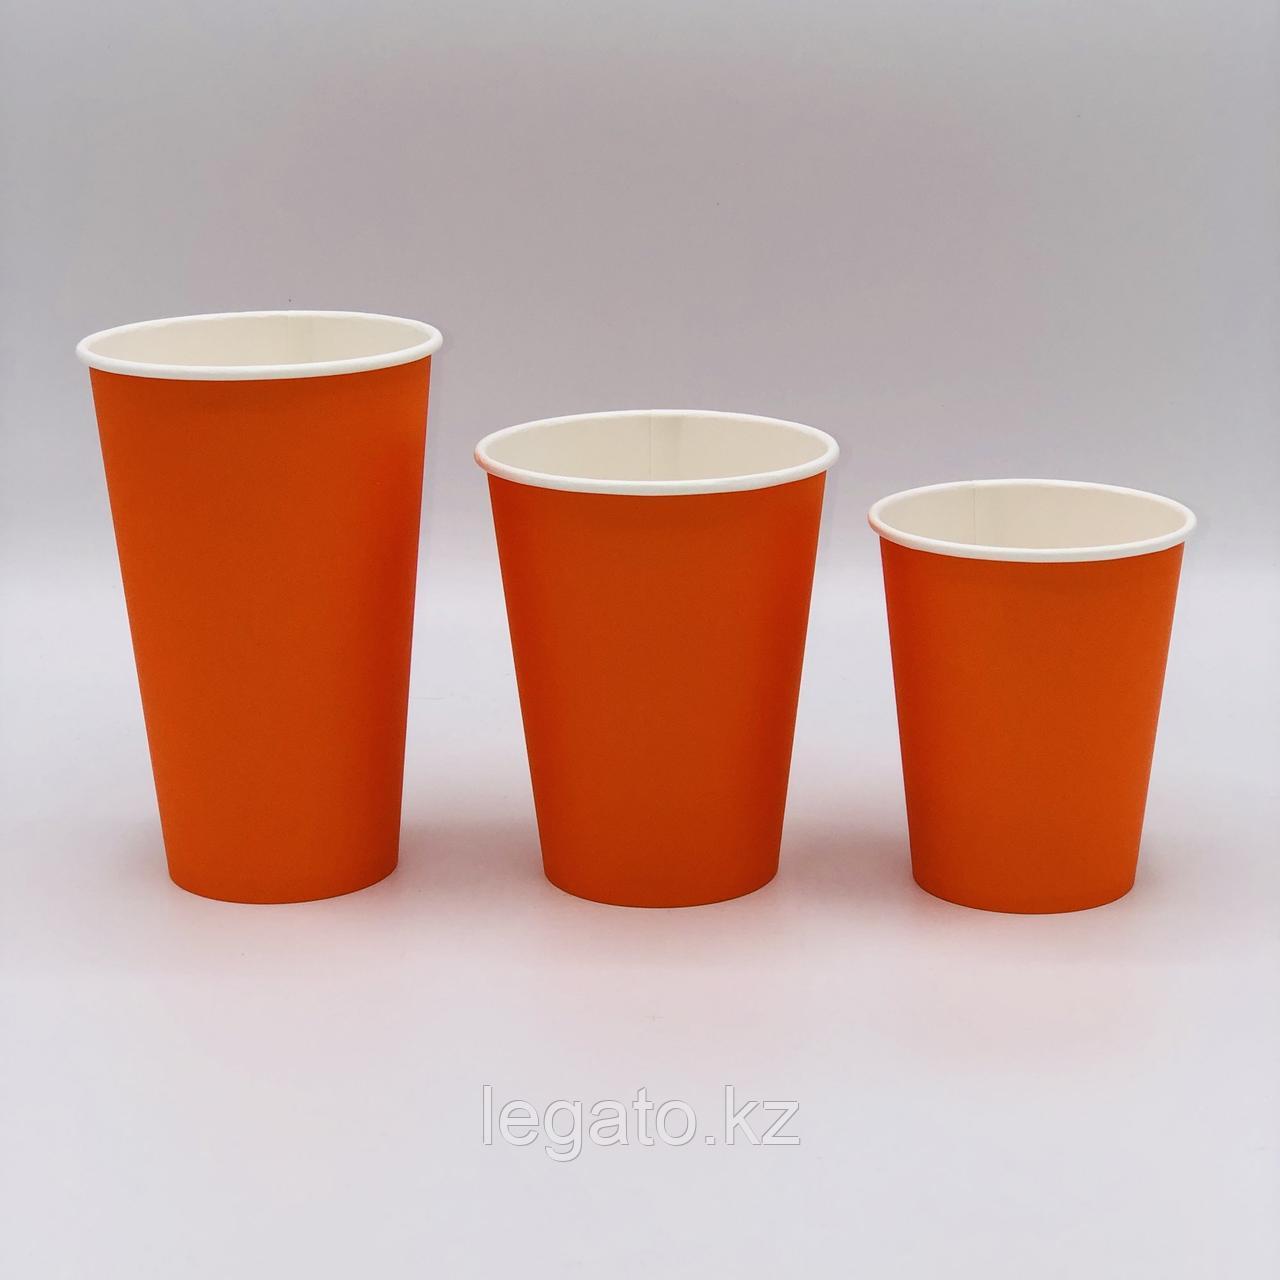 Стакан бумажный для горячих напитков "Оранжевый" 250 мл 50шт/уп 1000 шт/кор